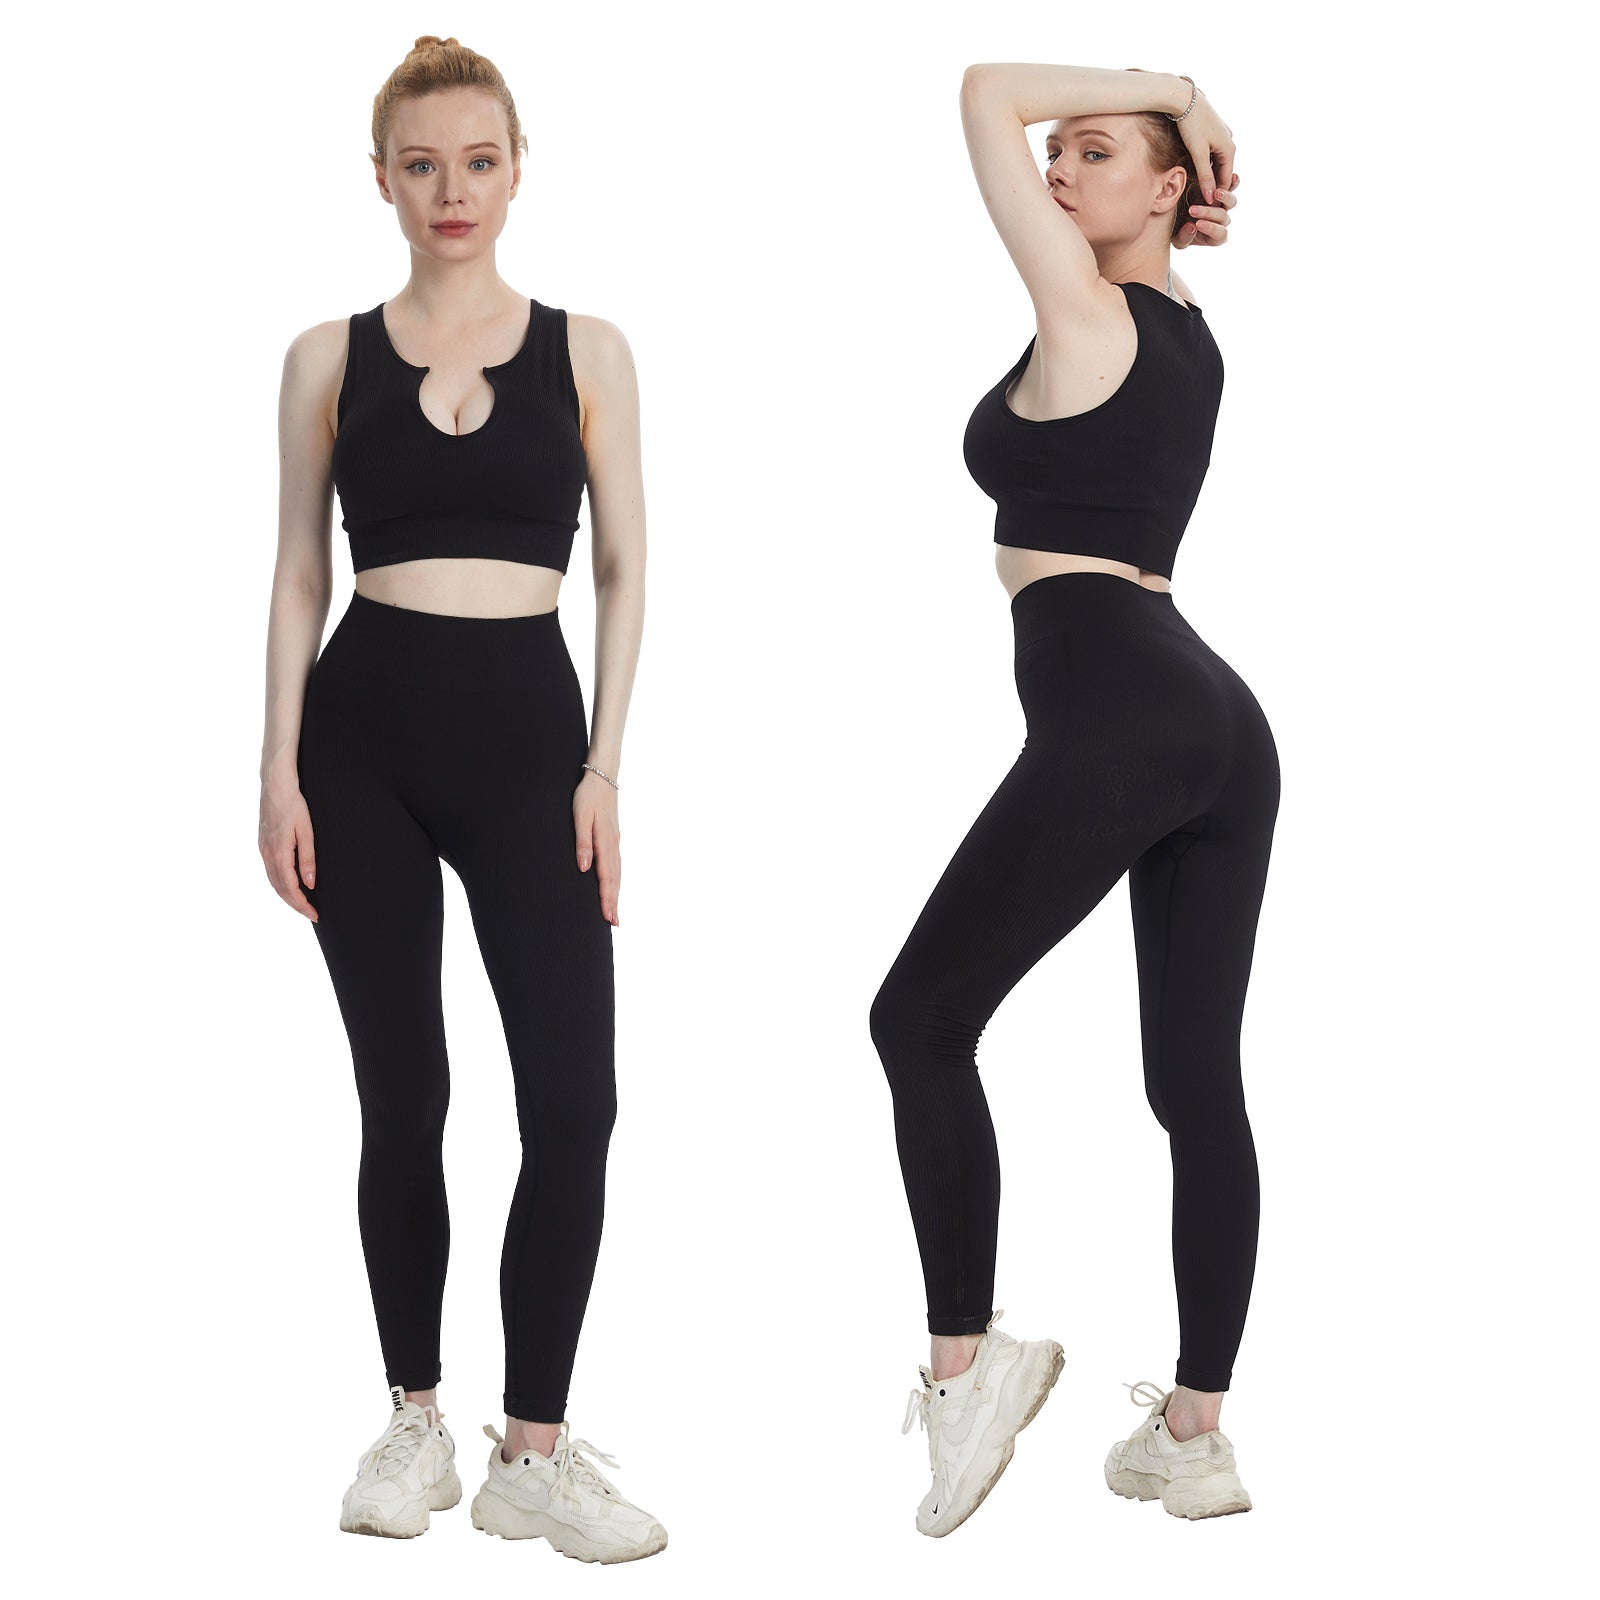 JOJOANS Workout Sets Women 2 Piece Outfits High Waist Seamless Leggings and  Crop